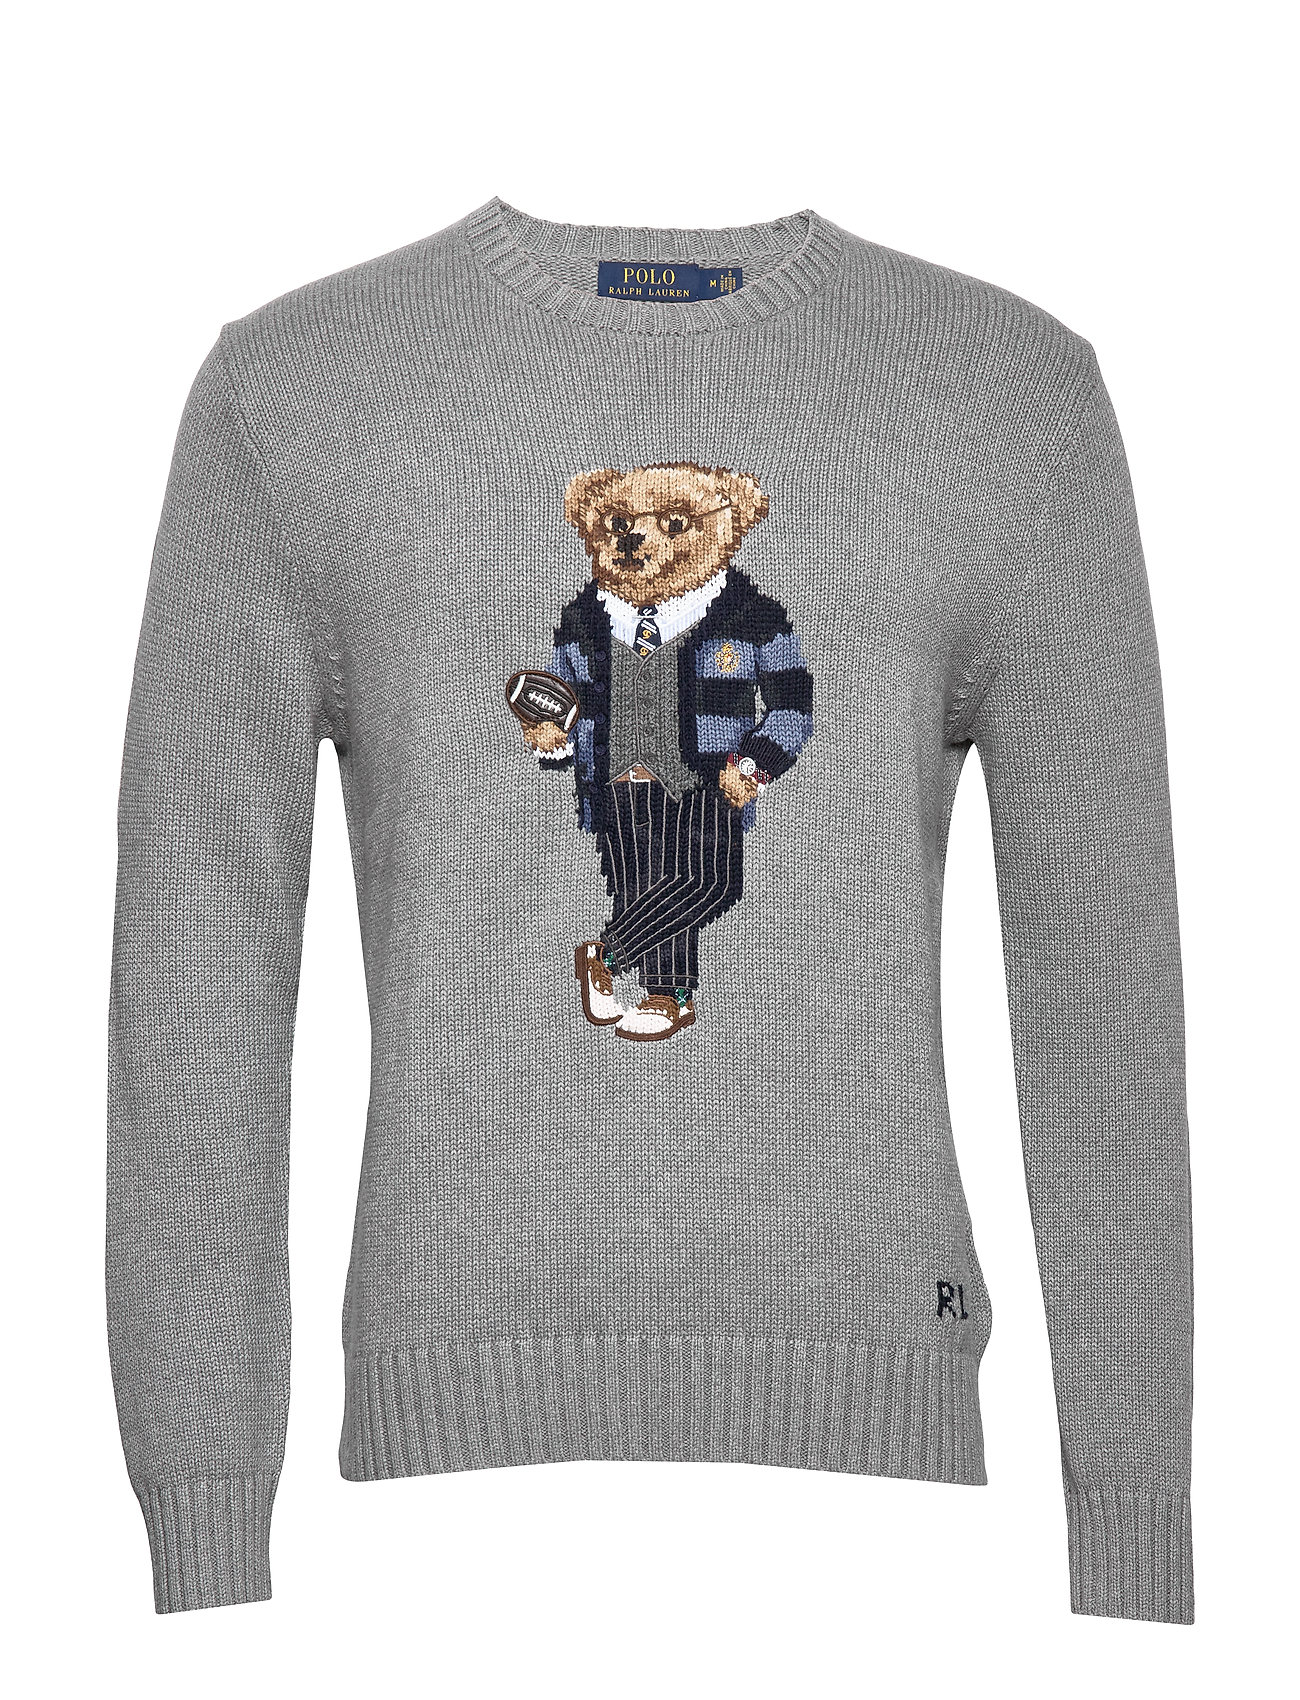 polo bear cotton sweater